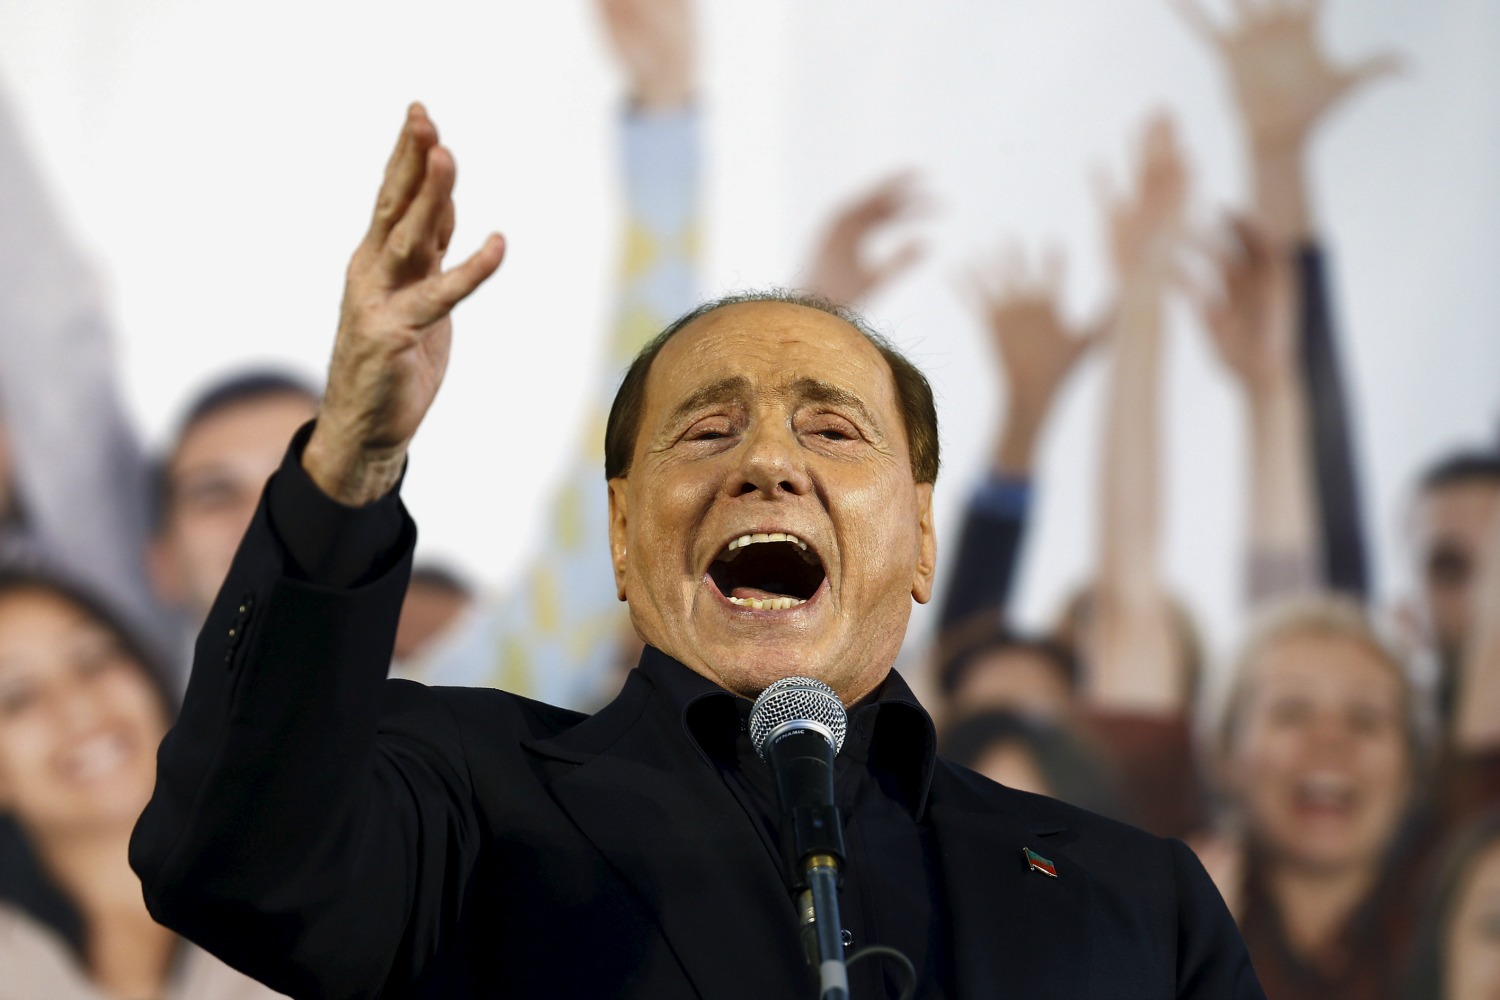 Silvio Berlusconi returns and goes at Renzi